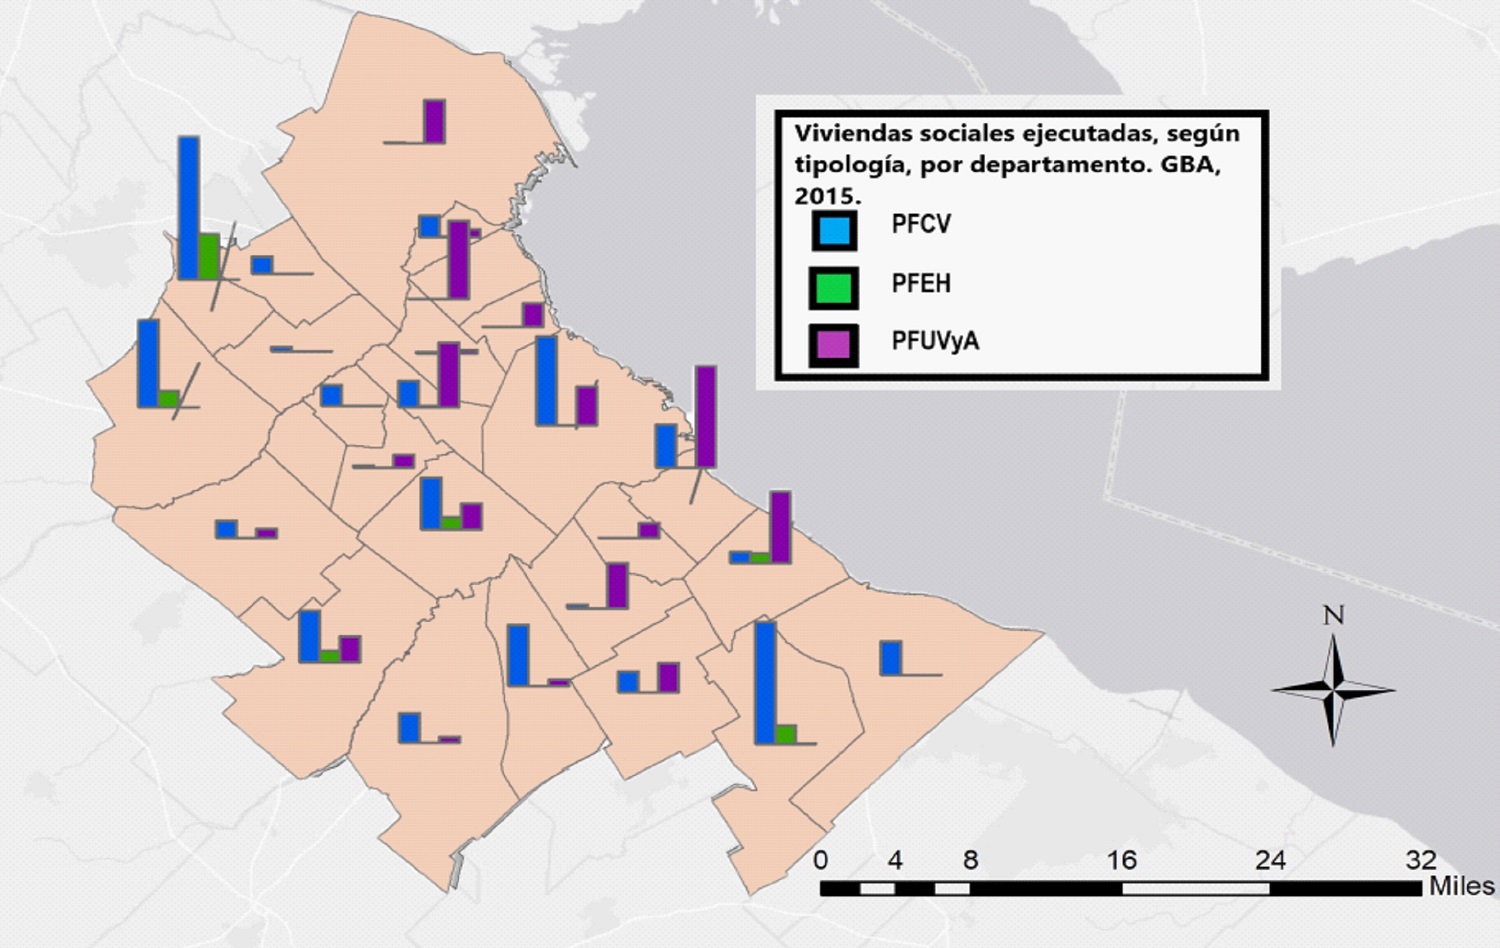 Localización de las viviendas sociales ejecutadas con los Programas Federales de Vivienda, según tipología, por departamento. GBA, 2015